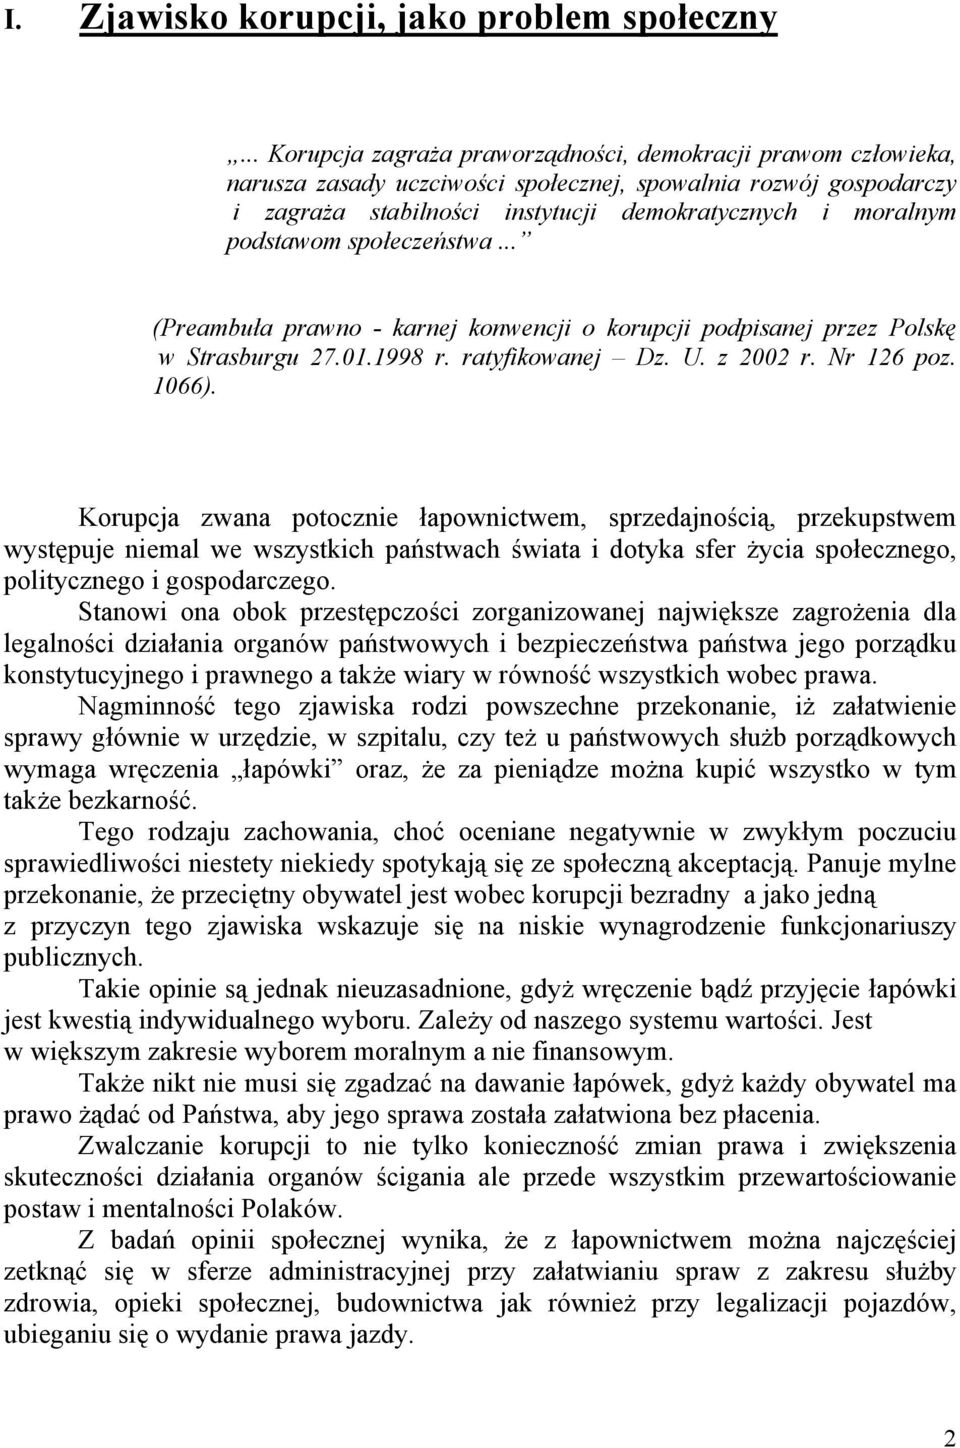 podstawom społeczeństwa... (Preambuła prawno - karnej konwencji o korupcji podpisanej przez Polskę w Strasburgu 27.01.1998 r. ratyfikowanej Dz. U. z 2002 r. Nr 126 poz. 1066).